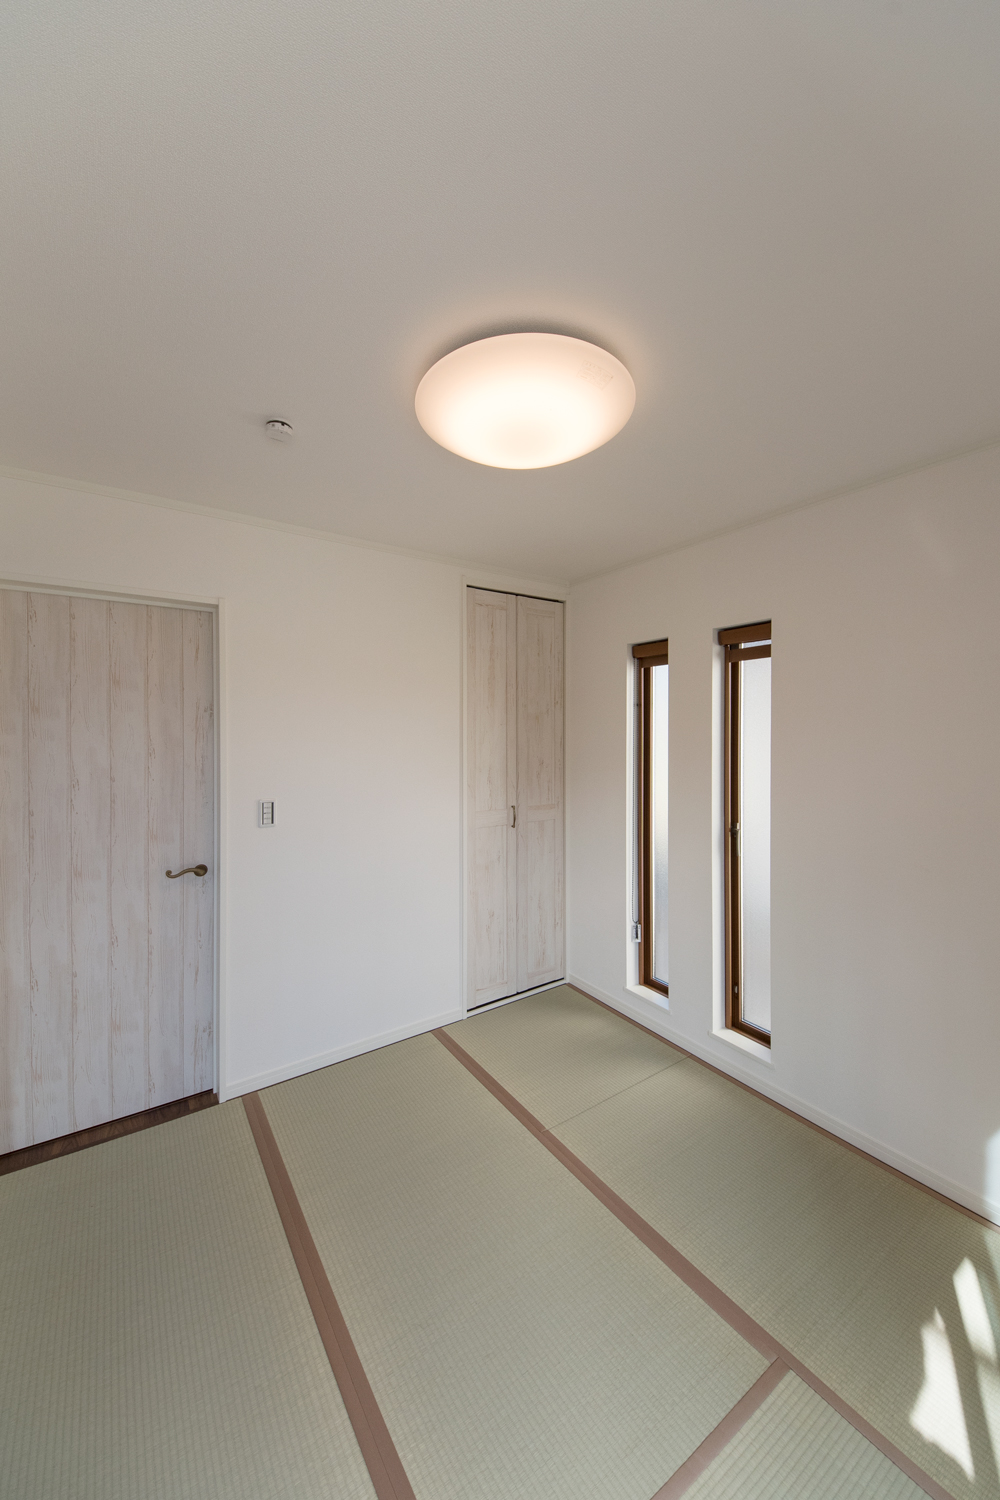 縦長の窓とエイジング加工された白い建具を施した畳敷き洋室。